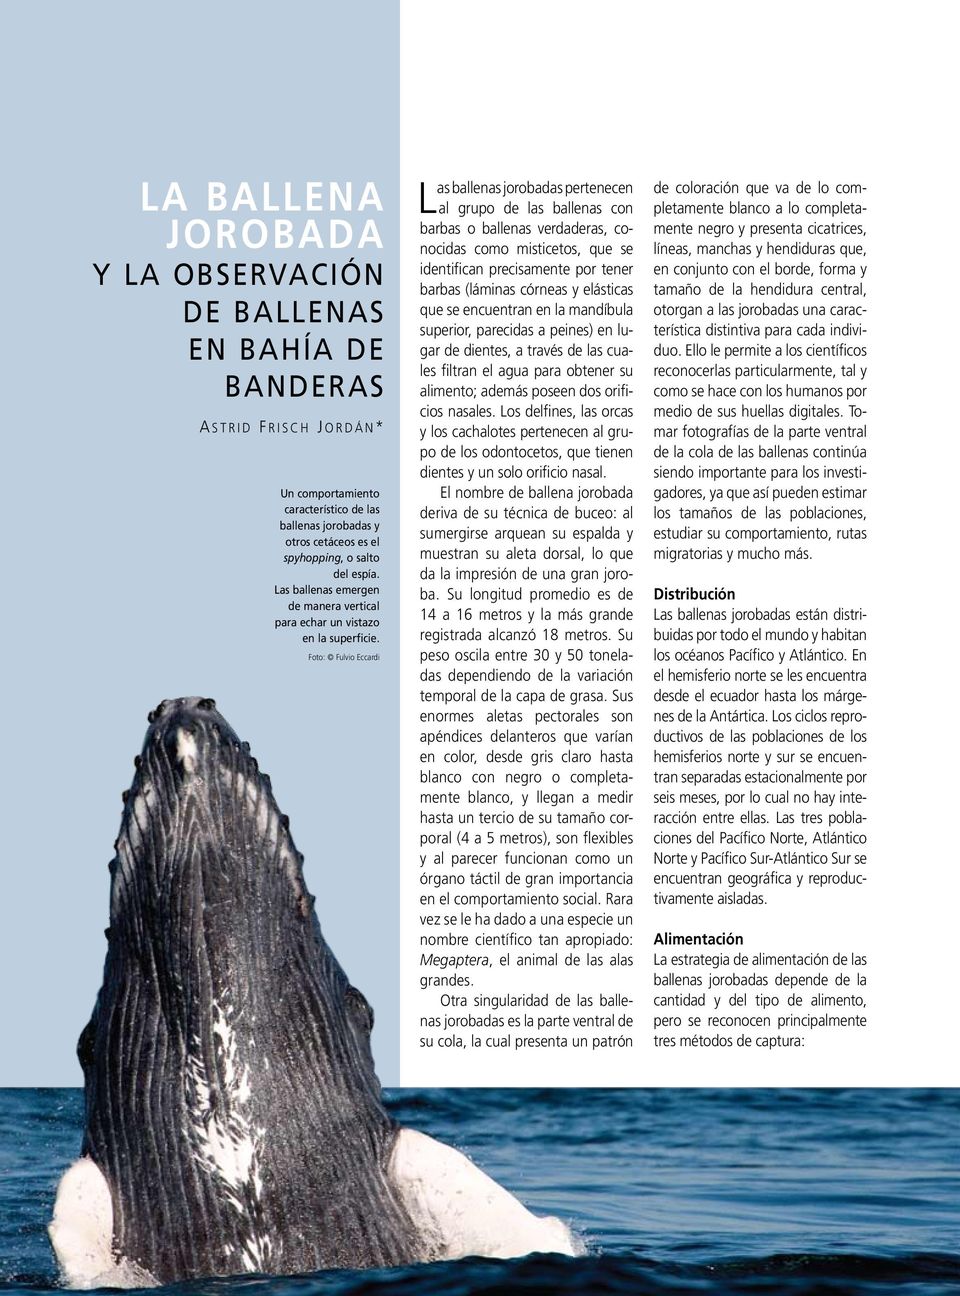 Foto: Fulvio Eccardi L as ballenas jorobadas pertenecen al grupo de las ballenas con barbas o ballenas verdaderas, conocidas como misticetos, que se identifican precisamente por tener barbas (láminas